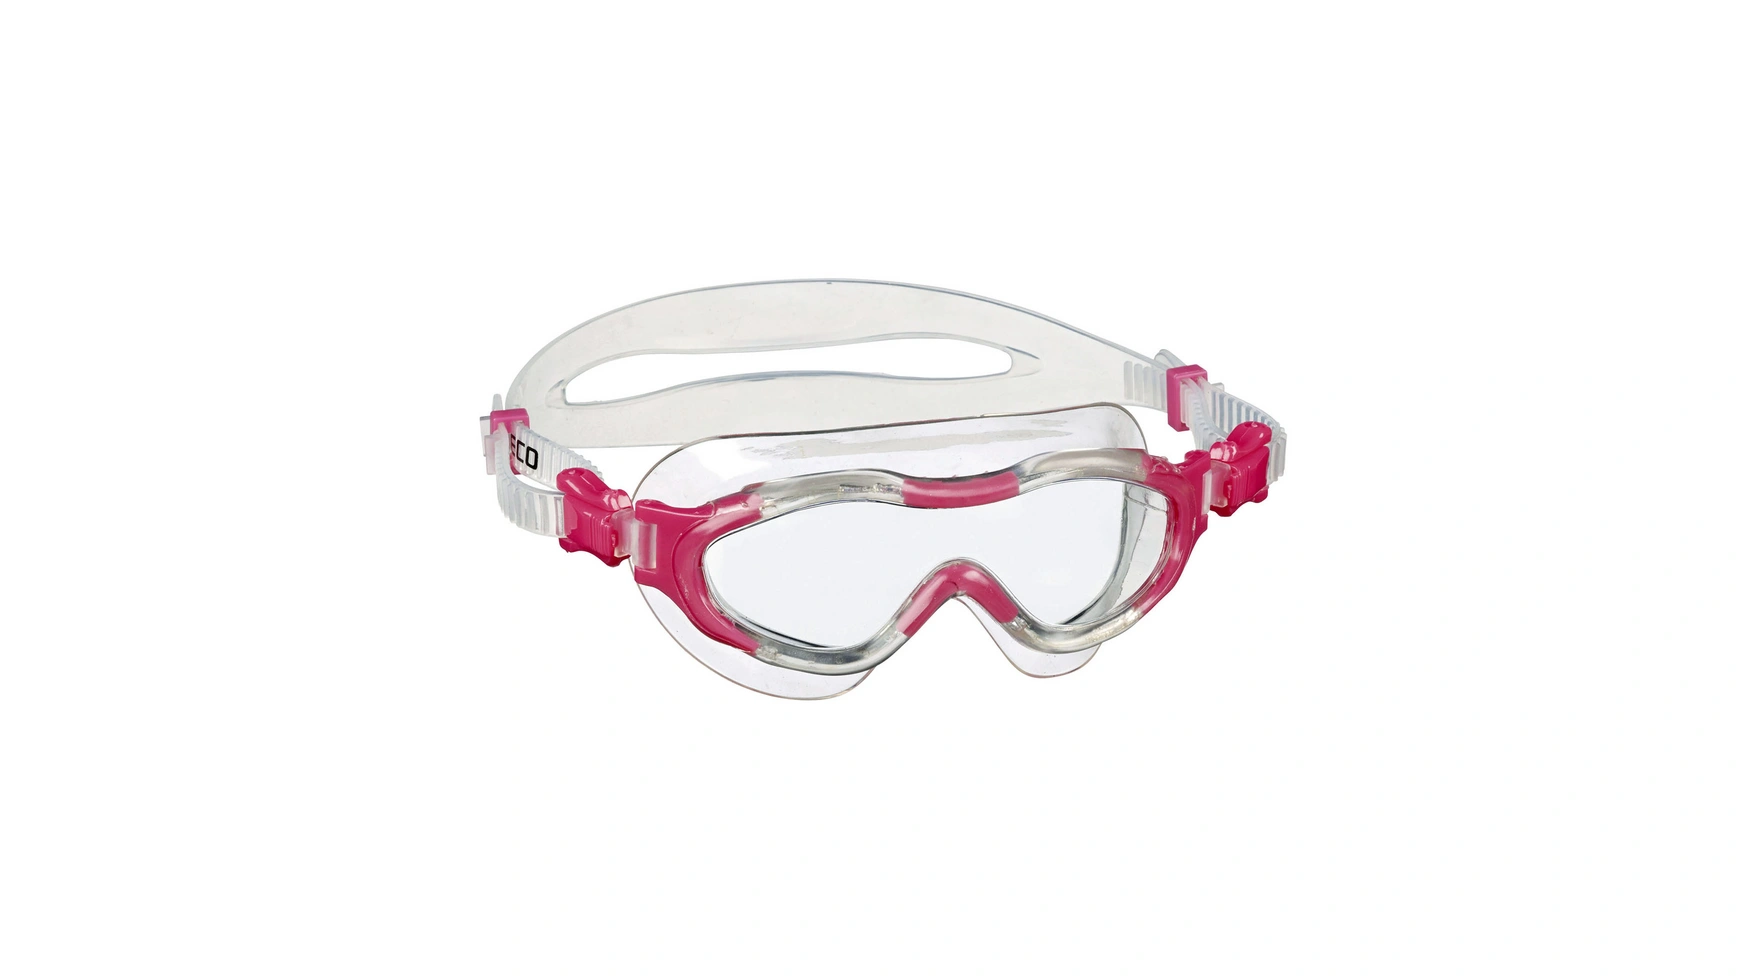 Beco Alicante 4+ Мягкие панорамные очки для детей от 4 лет и старше очки для плавания детские очки для плавания прямые продажи с завода водонепроницаемые противотуманные детские силиконовые очки очки